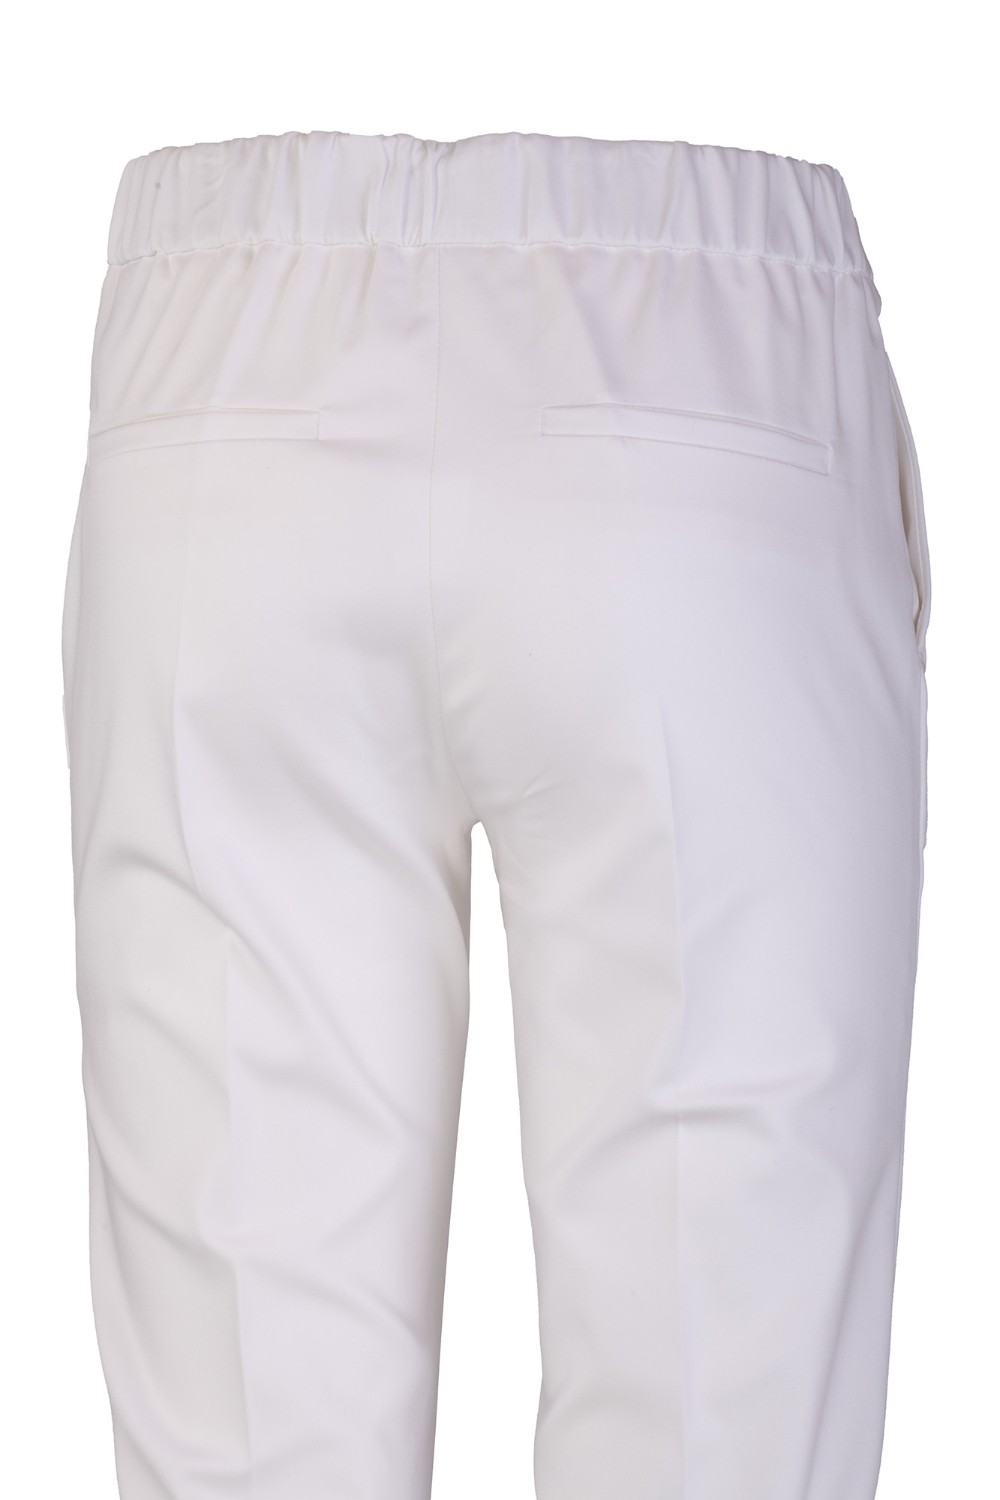 shop CLIPS  Pantalone: Clips pantaloni dritti misto cotone
Tasche america. 
Vita alta con elastico.
Composizione: 62% cotone, 33% poliestere, 5% elastan.. E220 9372-03 number 5364083